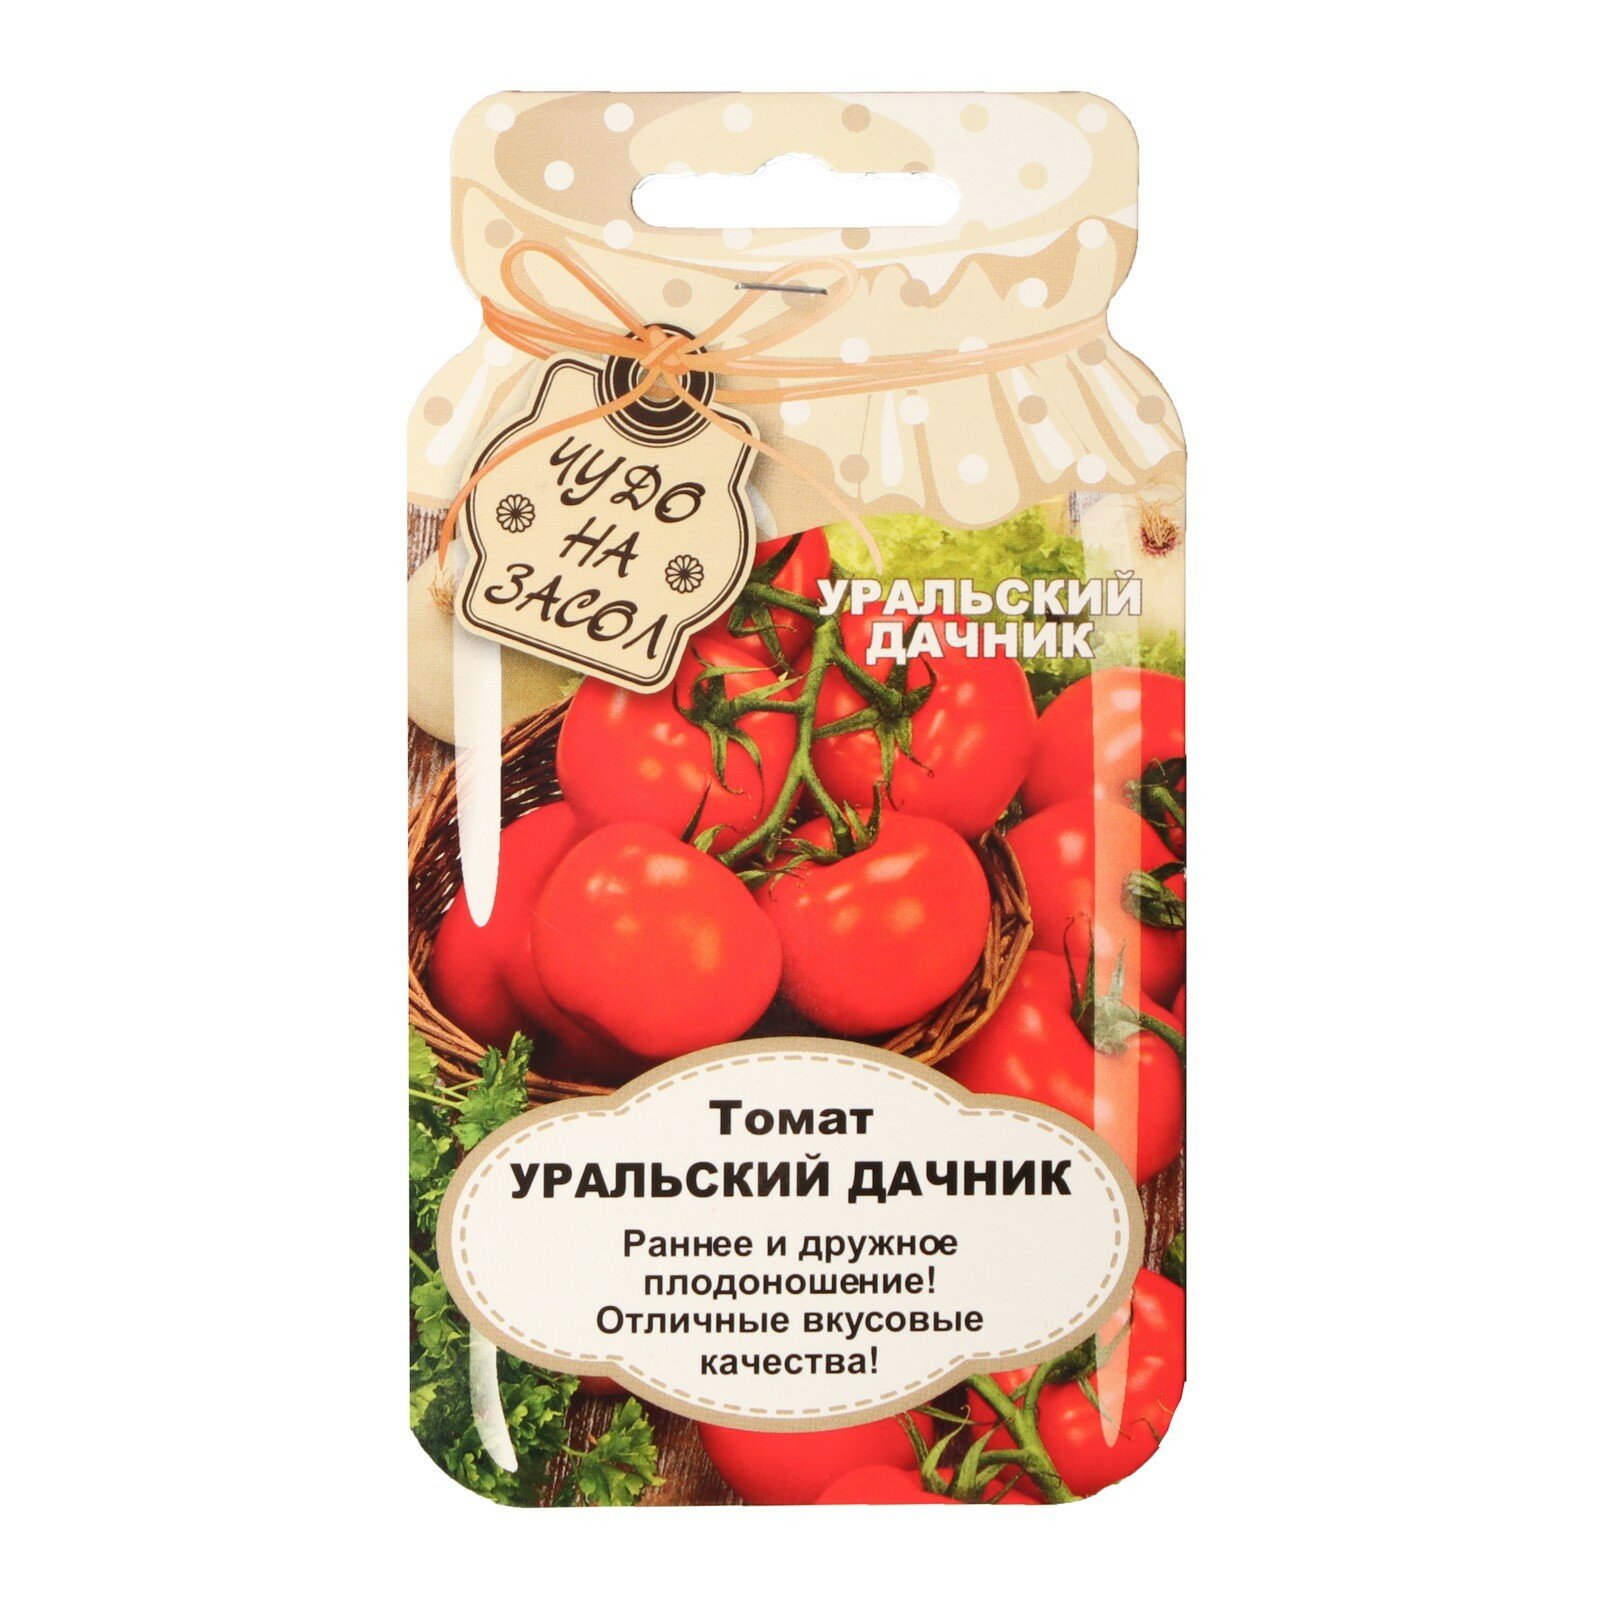 Семена Томат "Уральский дачник", банка, 20 шт (4шт.)